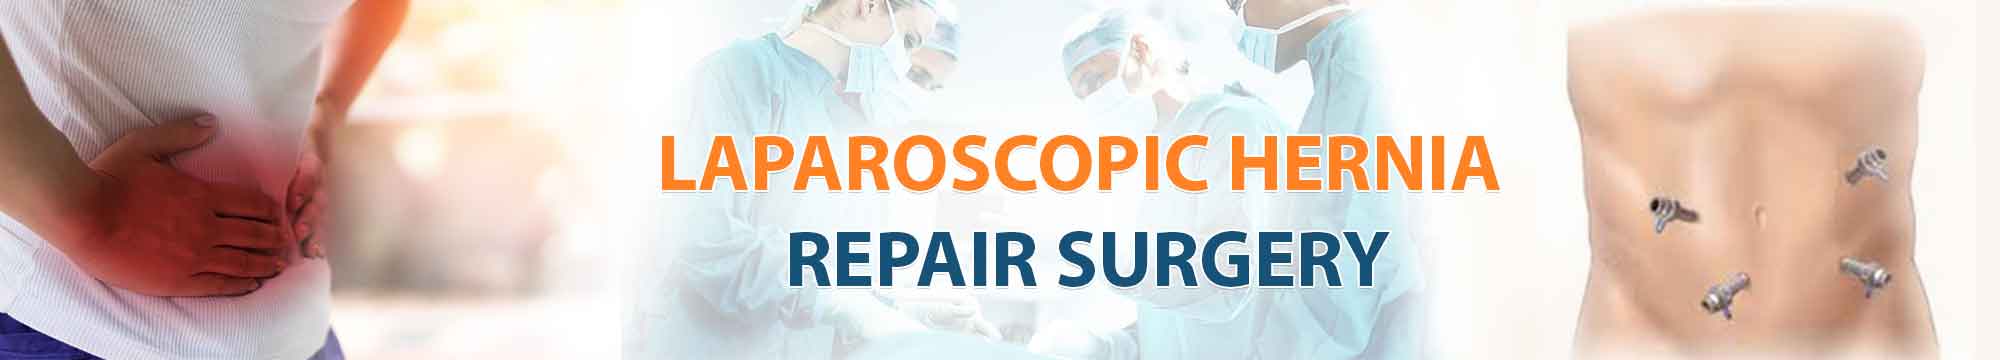 Laparoscopic Hernia Repair Surgery